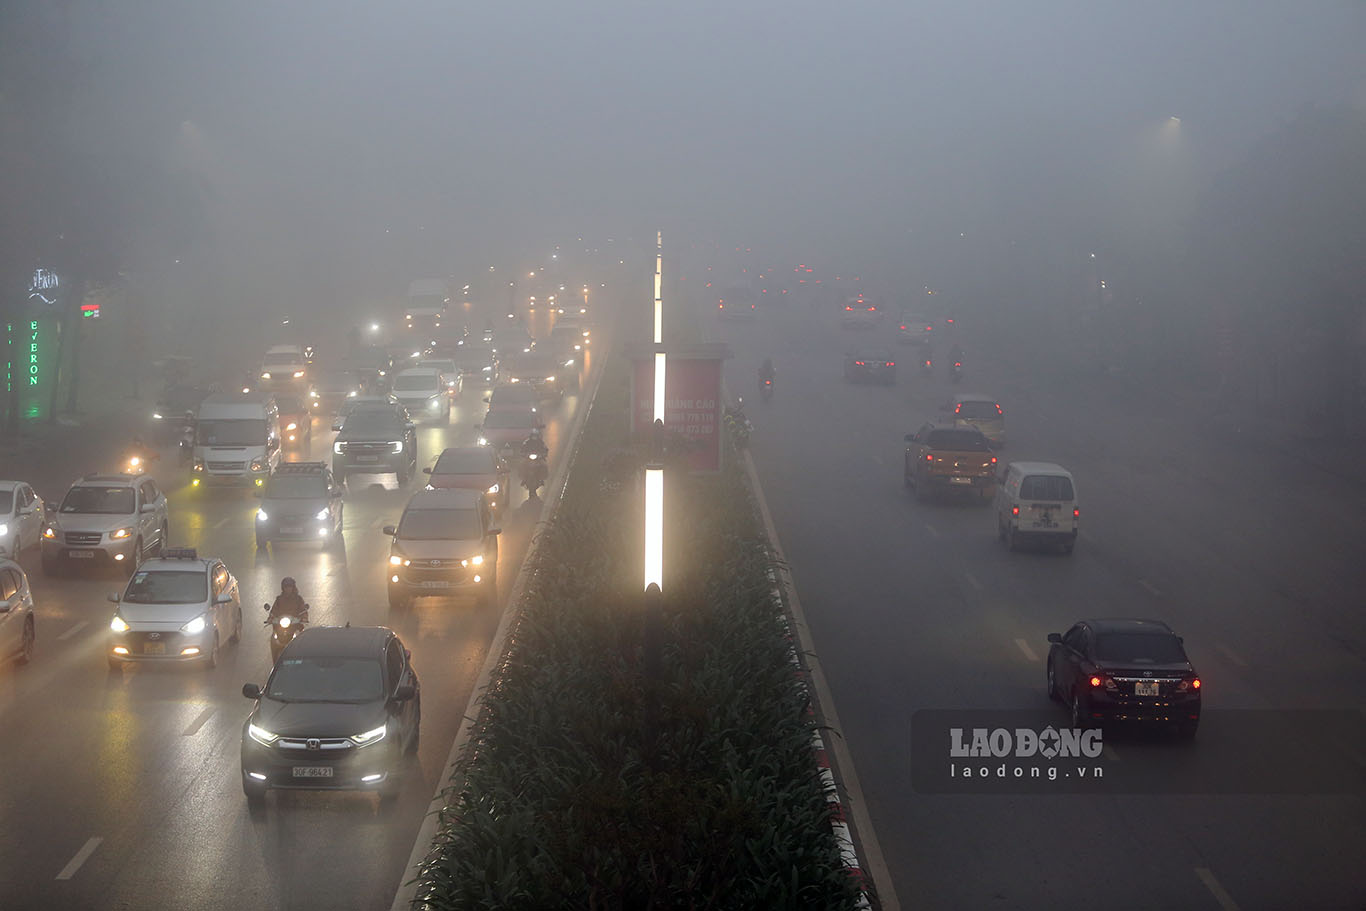 Hình ảnh ghi nhận trên đường Trần Duy Hưng vào hơn 7h sáng nay, 100% các phương tiện di chuyển phải bật đèn, lưu thông với tốc độ thấp.